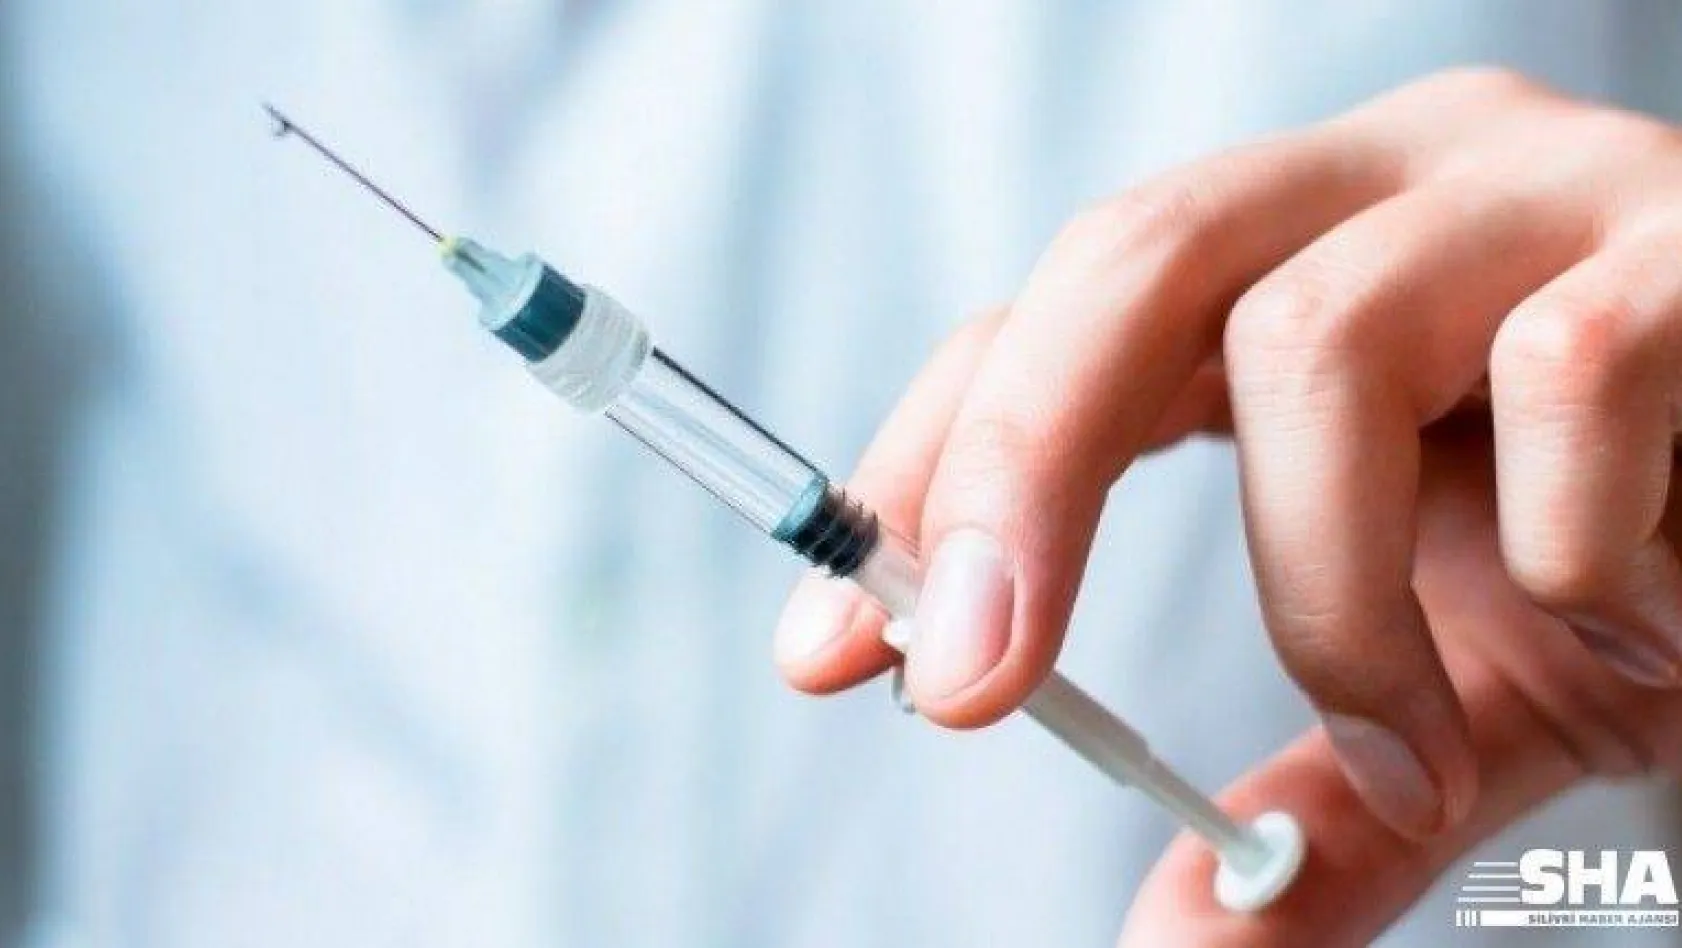 Sağlıklıya grip, risk grubuna hem grip hem zatürre aşısı